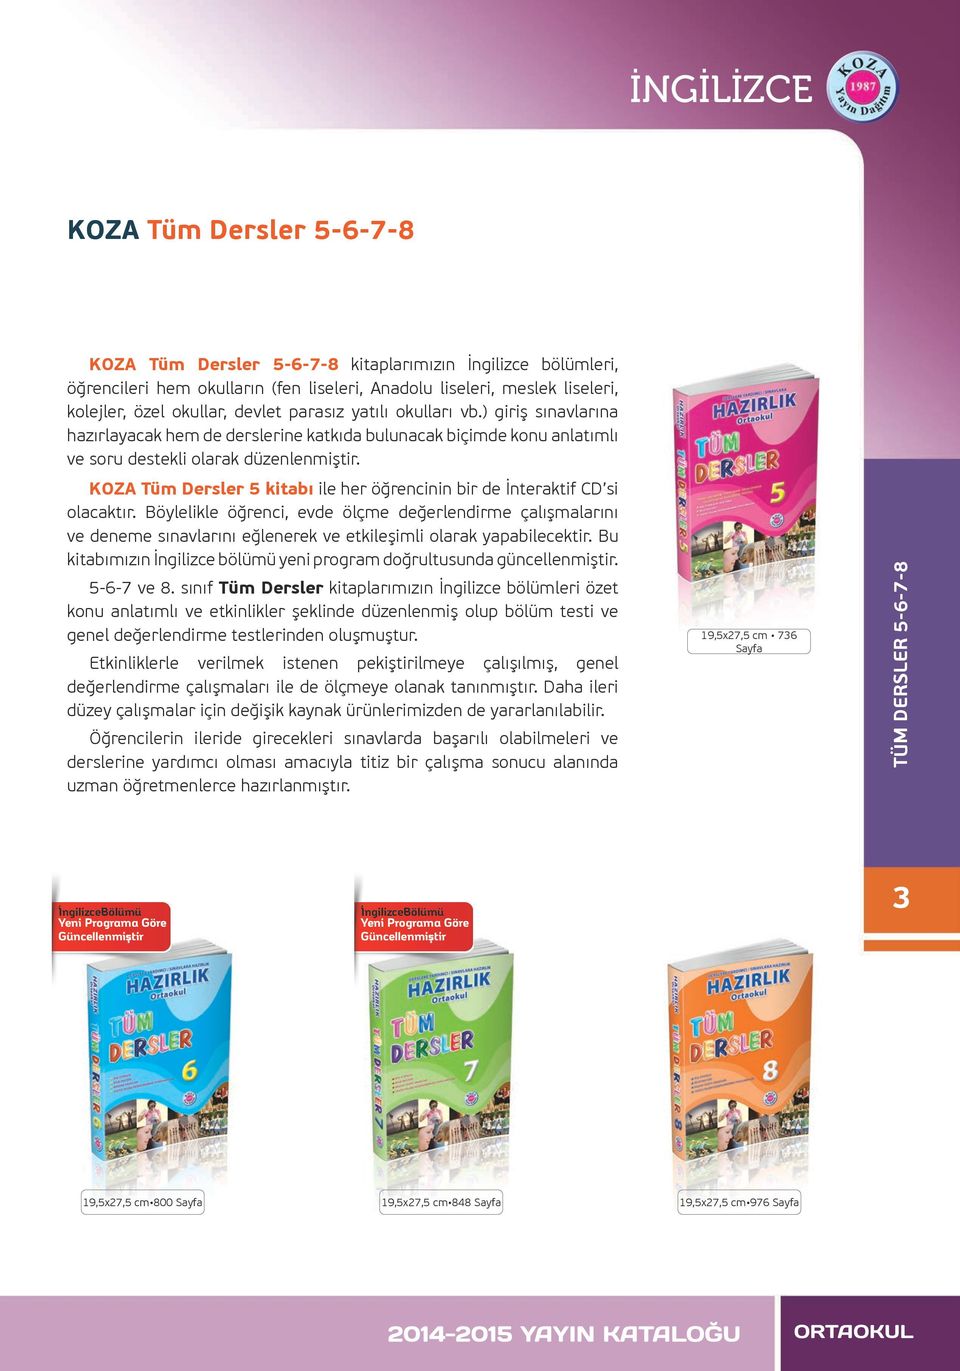 KOZA Tüm Dersler 5 kitabı ile her öğrencinin bir de İnteraktif CD si olacaktır.